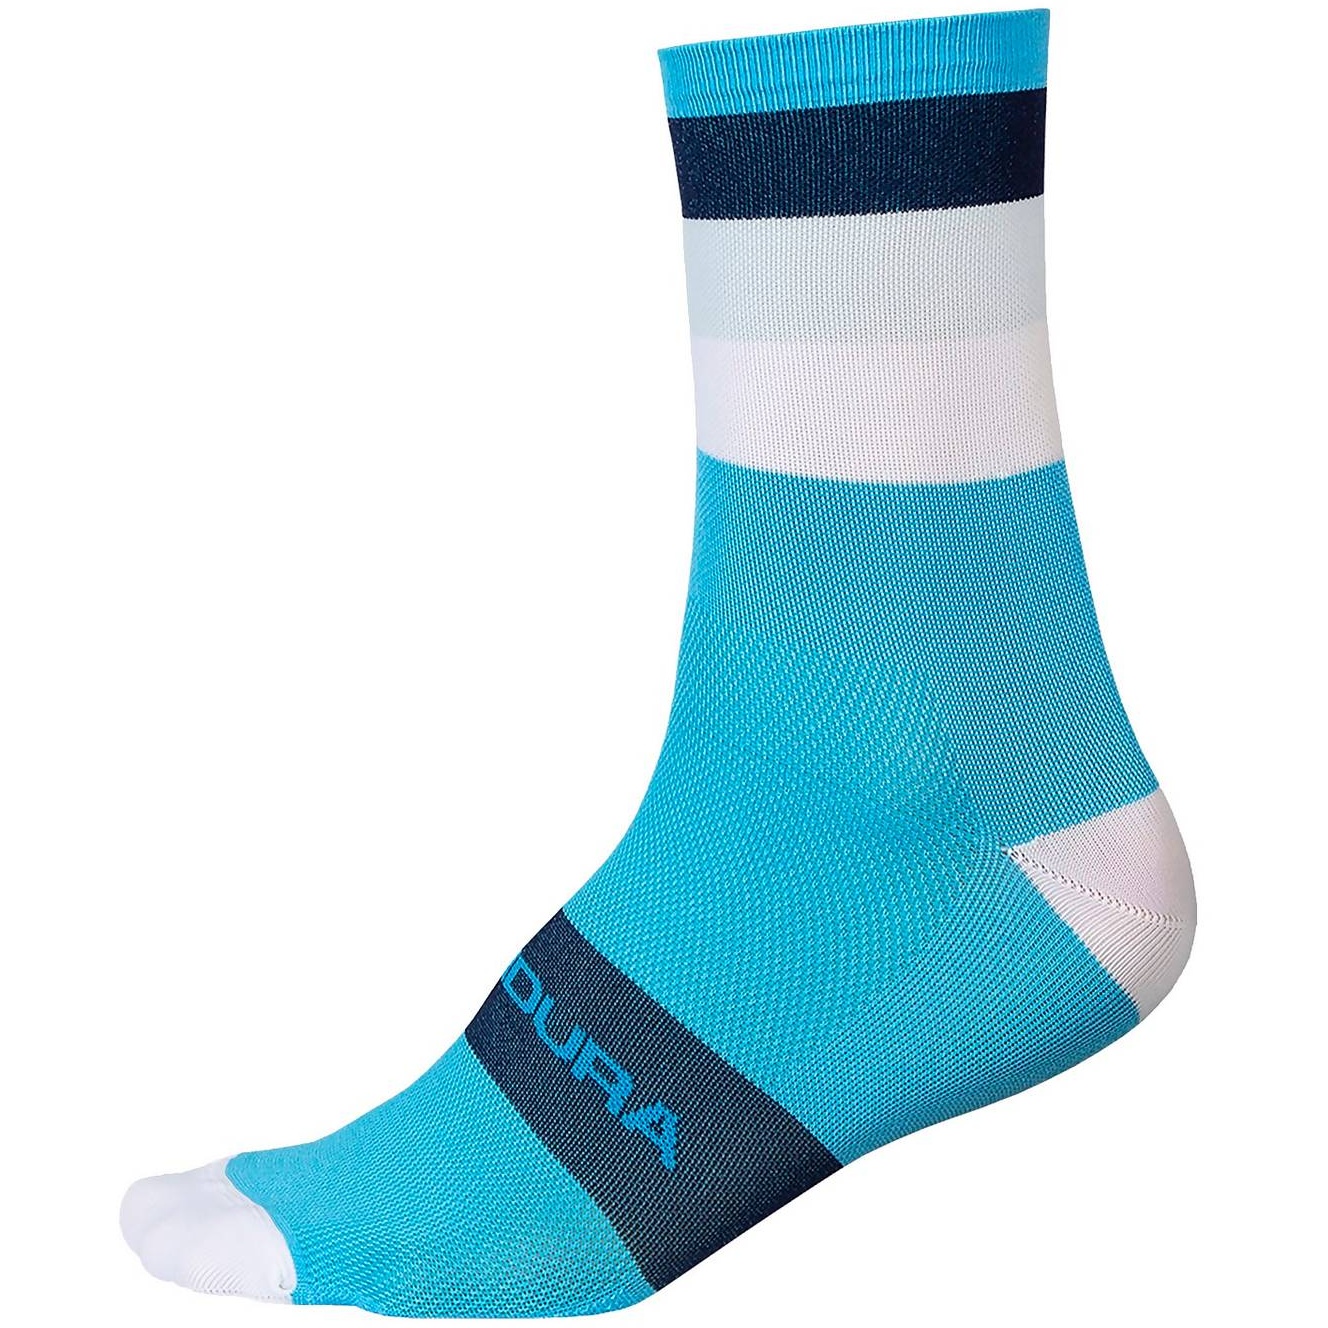 Produktbild von Endura Bandwidth Socken - neon-blau